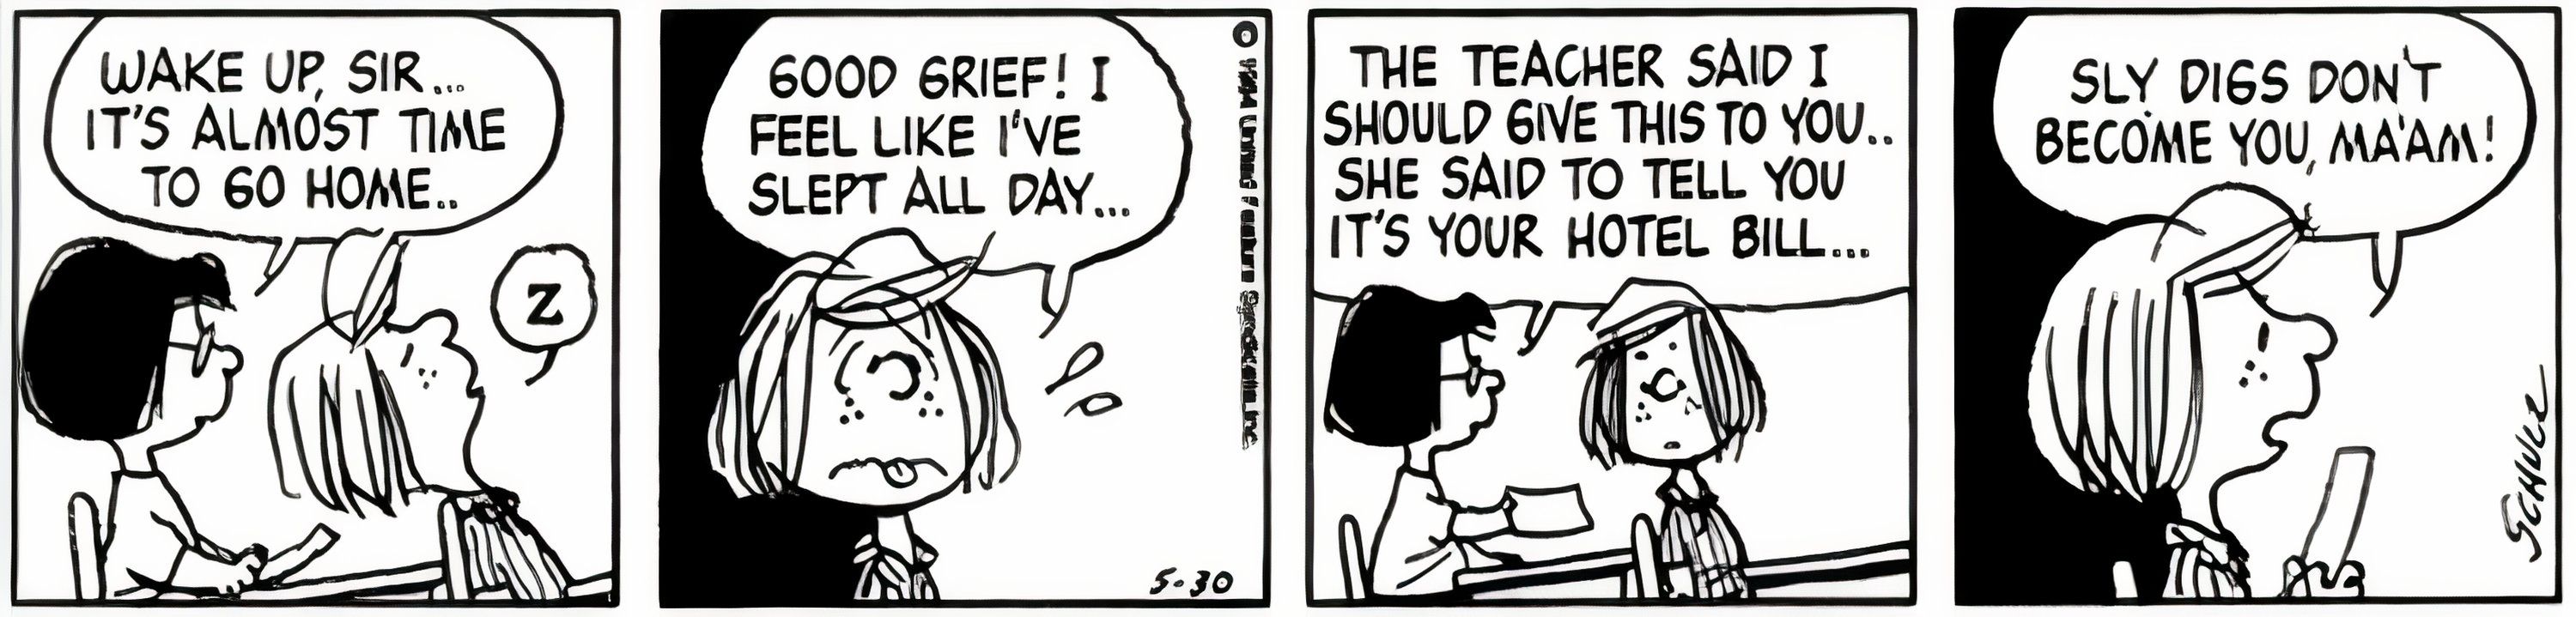 Peppermint Patty tells her teacher 